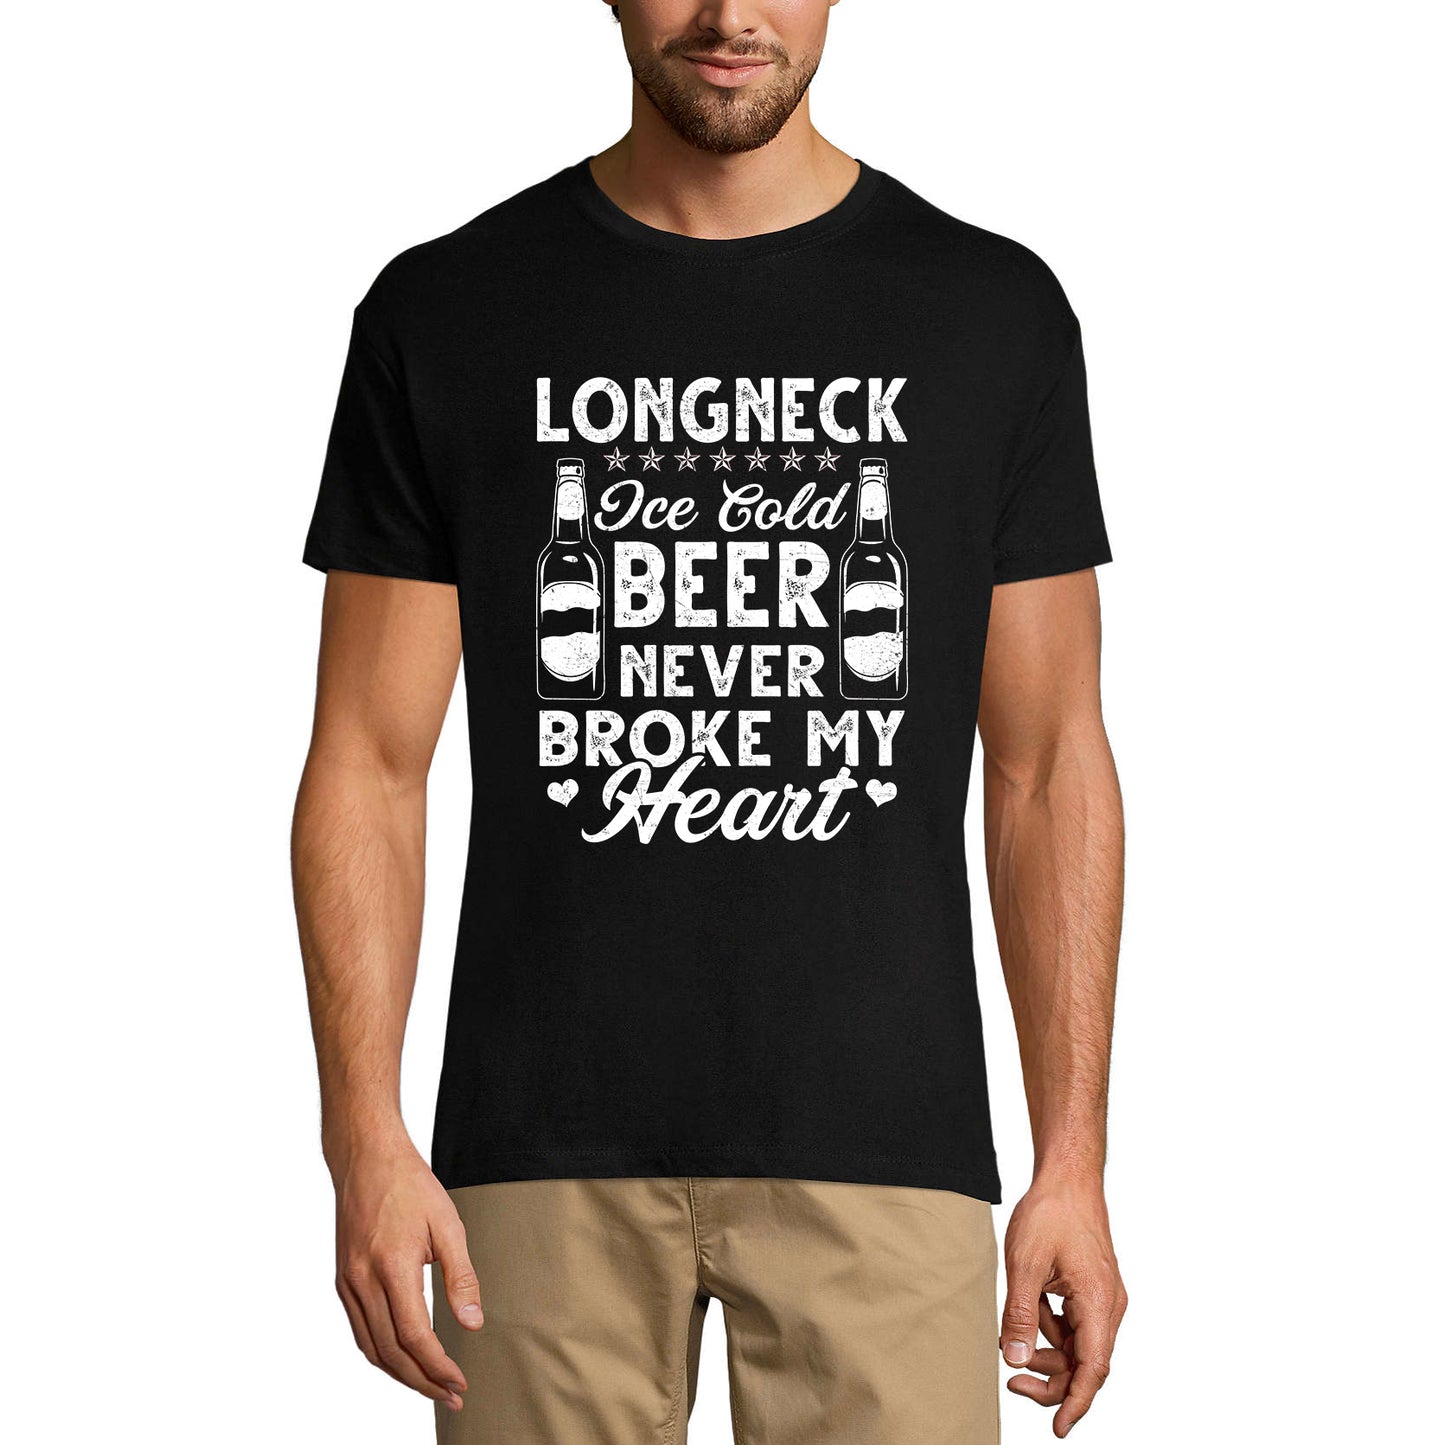 ULTRABASIC Herren T-Shirt Longneck Ice Cold Beer Never Broke My Heart – Bierliebhaber T-Shirt